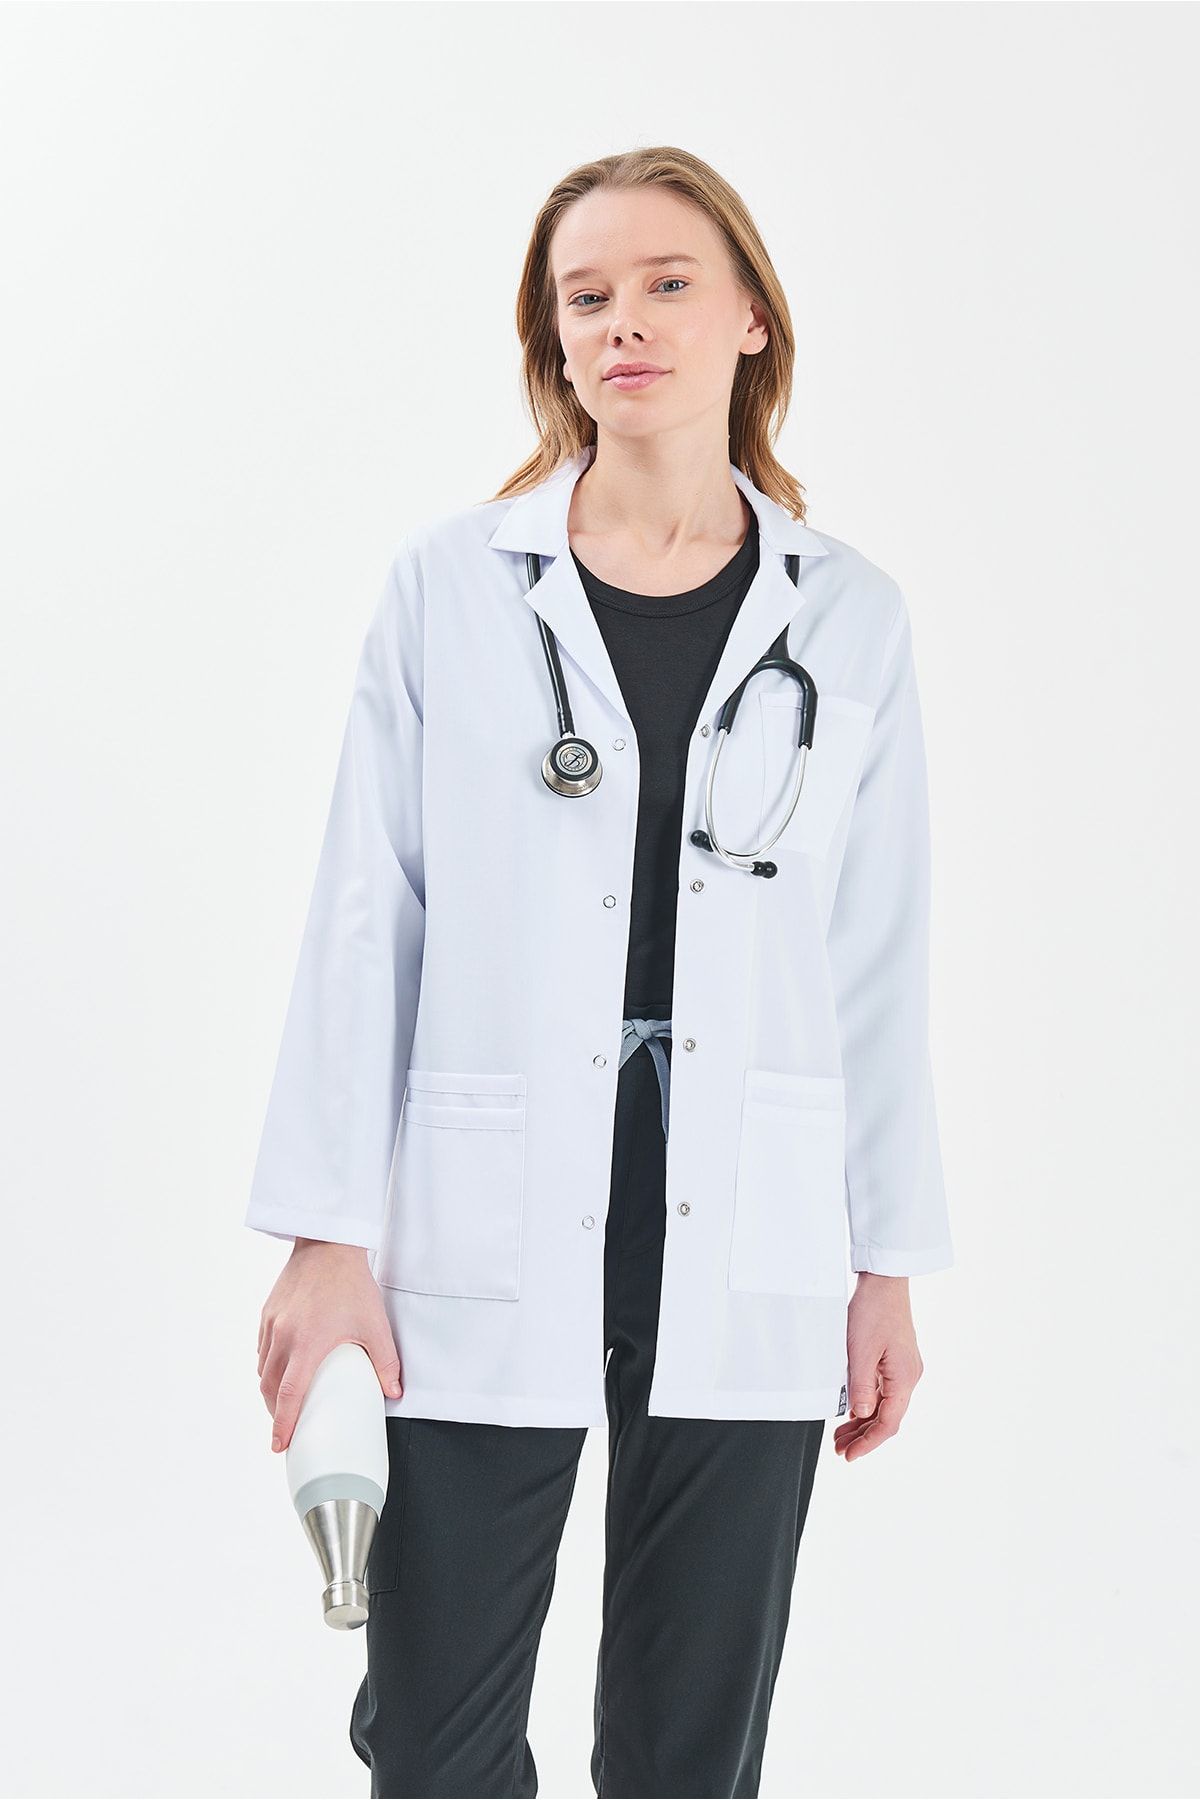 sar tekstil Feniks Kadın Beyaz Klasik Yaka Ceket Boy Doktor Hemşire Eczacı Öğretmen Laboratuvar Önlüğü 5 Cepli